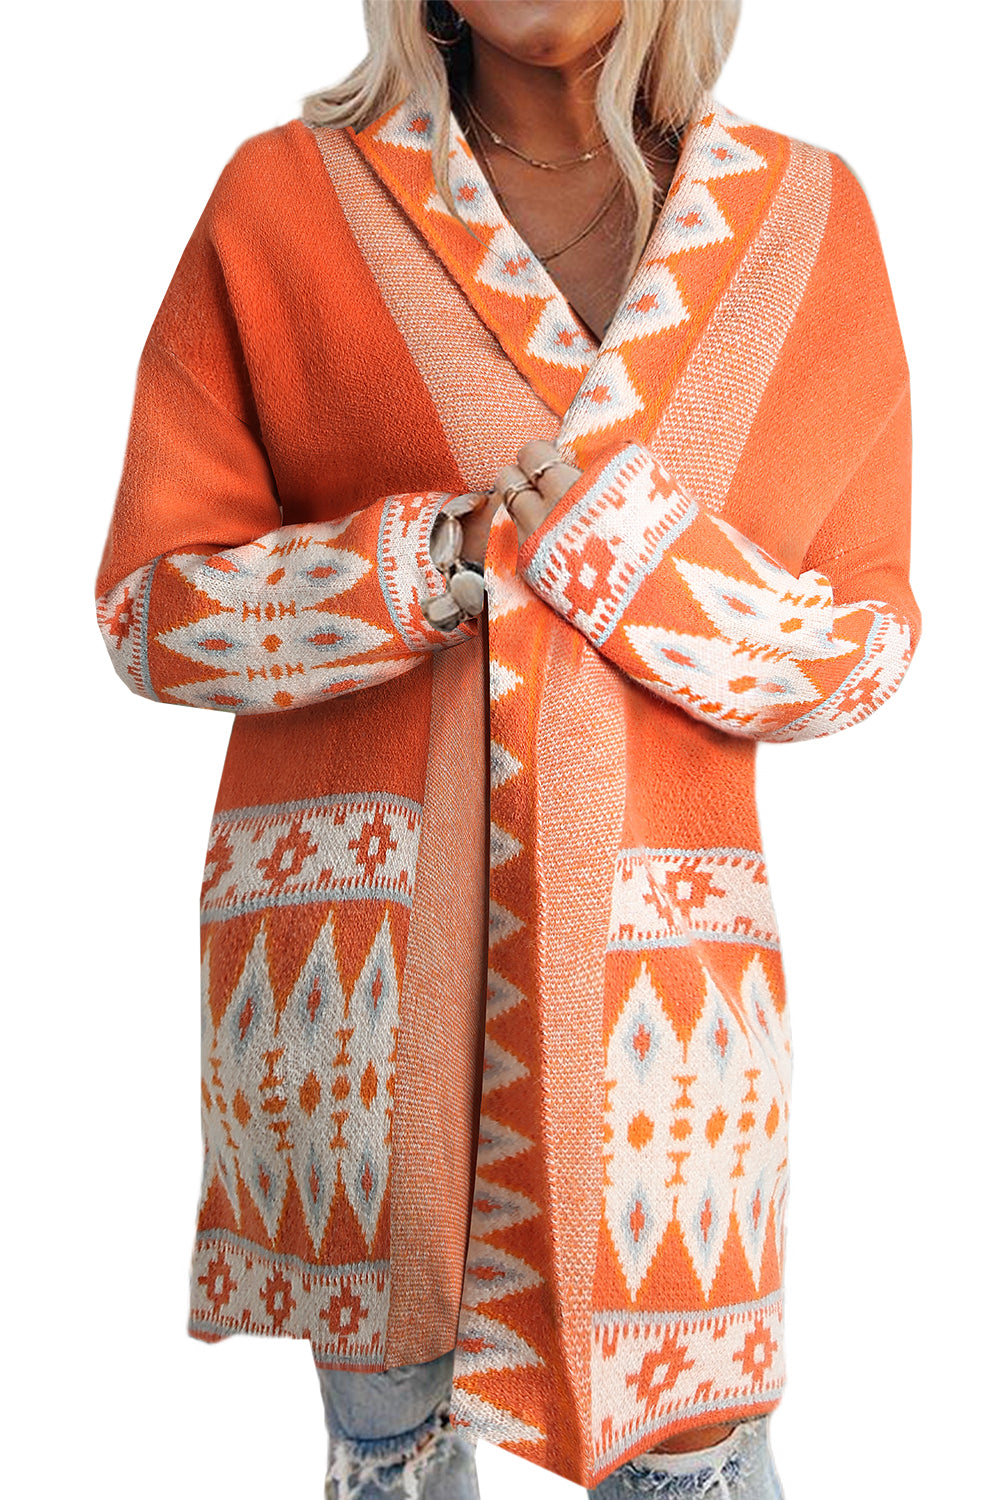 Orange bedruckter Cardigan mit offenem Vorderteil und Aztekenmuster